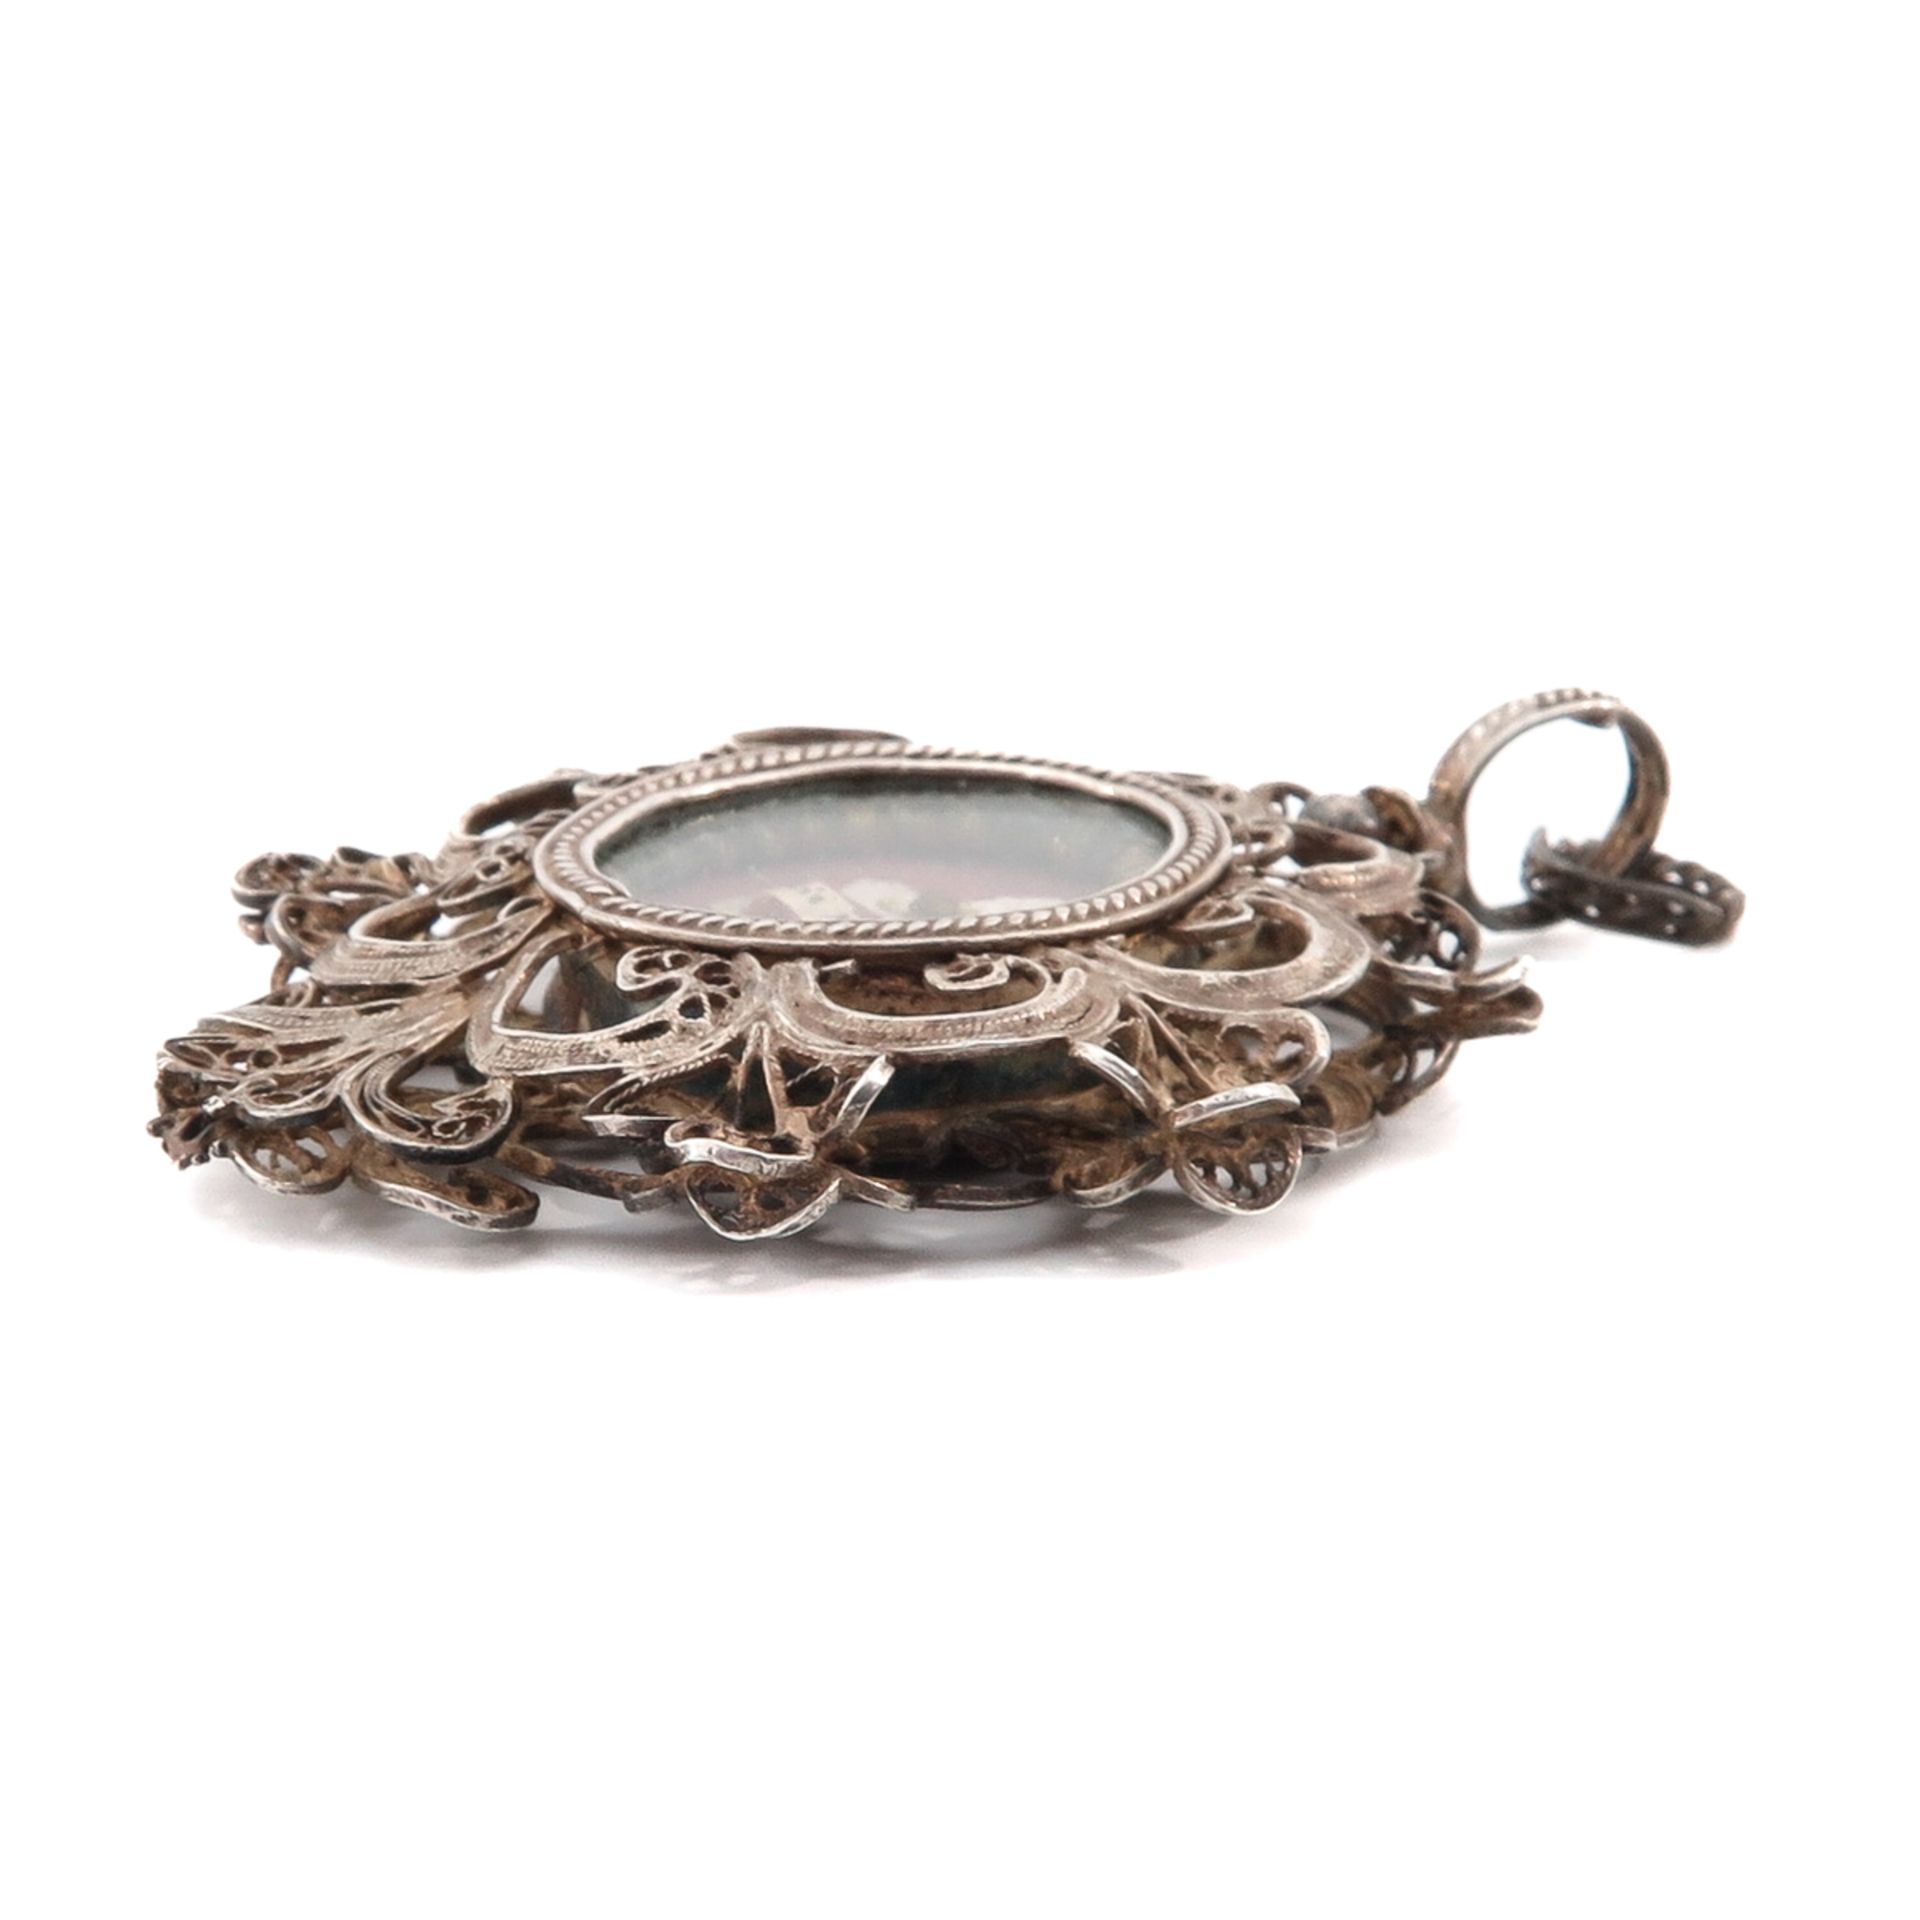 A Silver Filigree Relic Pendant - Image 5 of 5